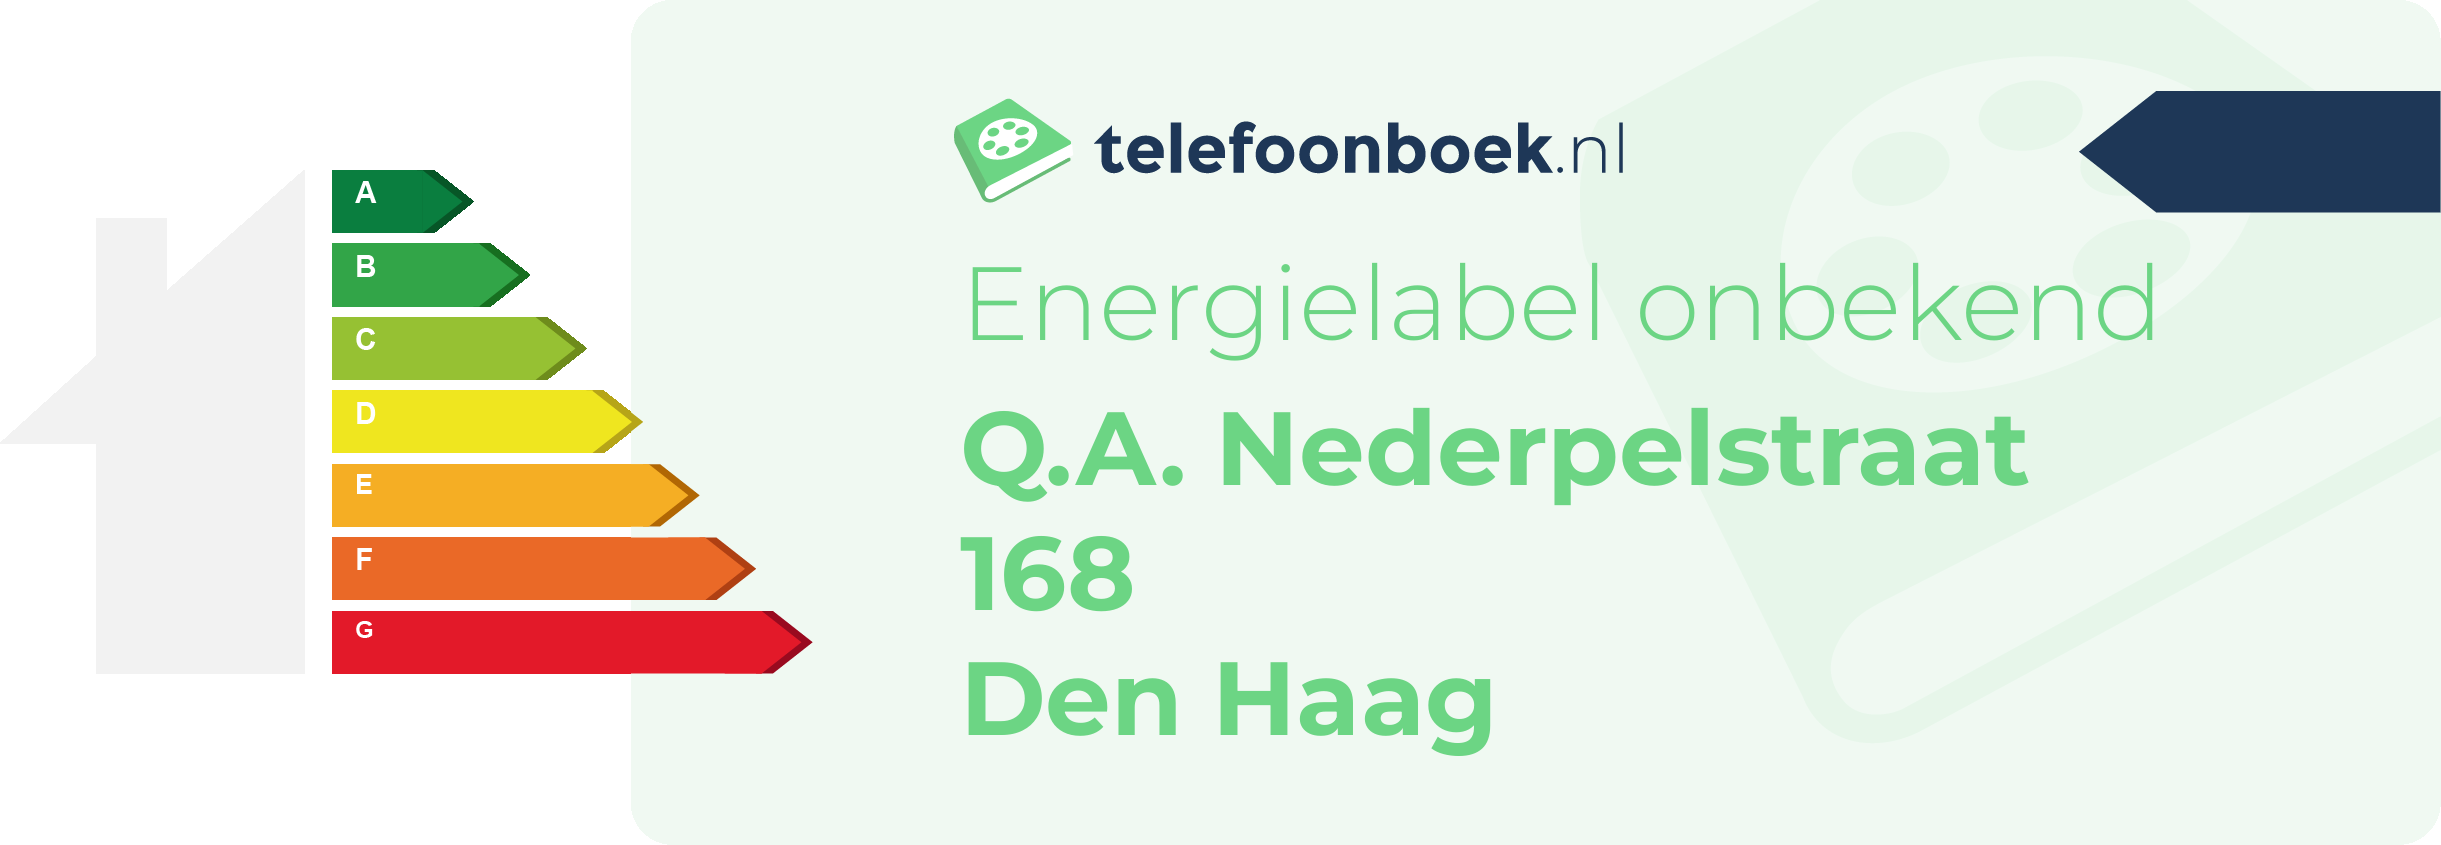 Energielabel Q.A. Nederpelstraat 168 Den Haag